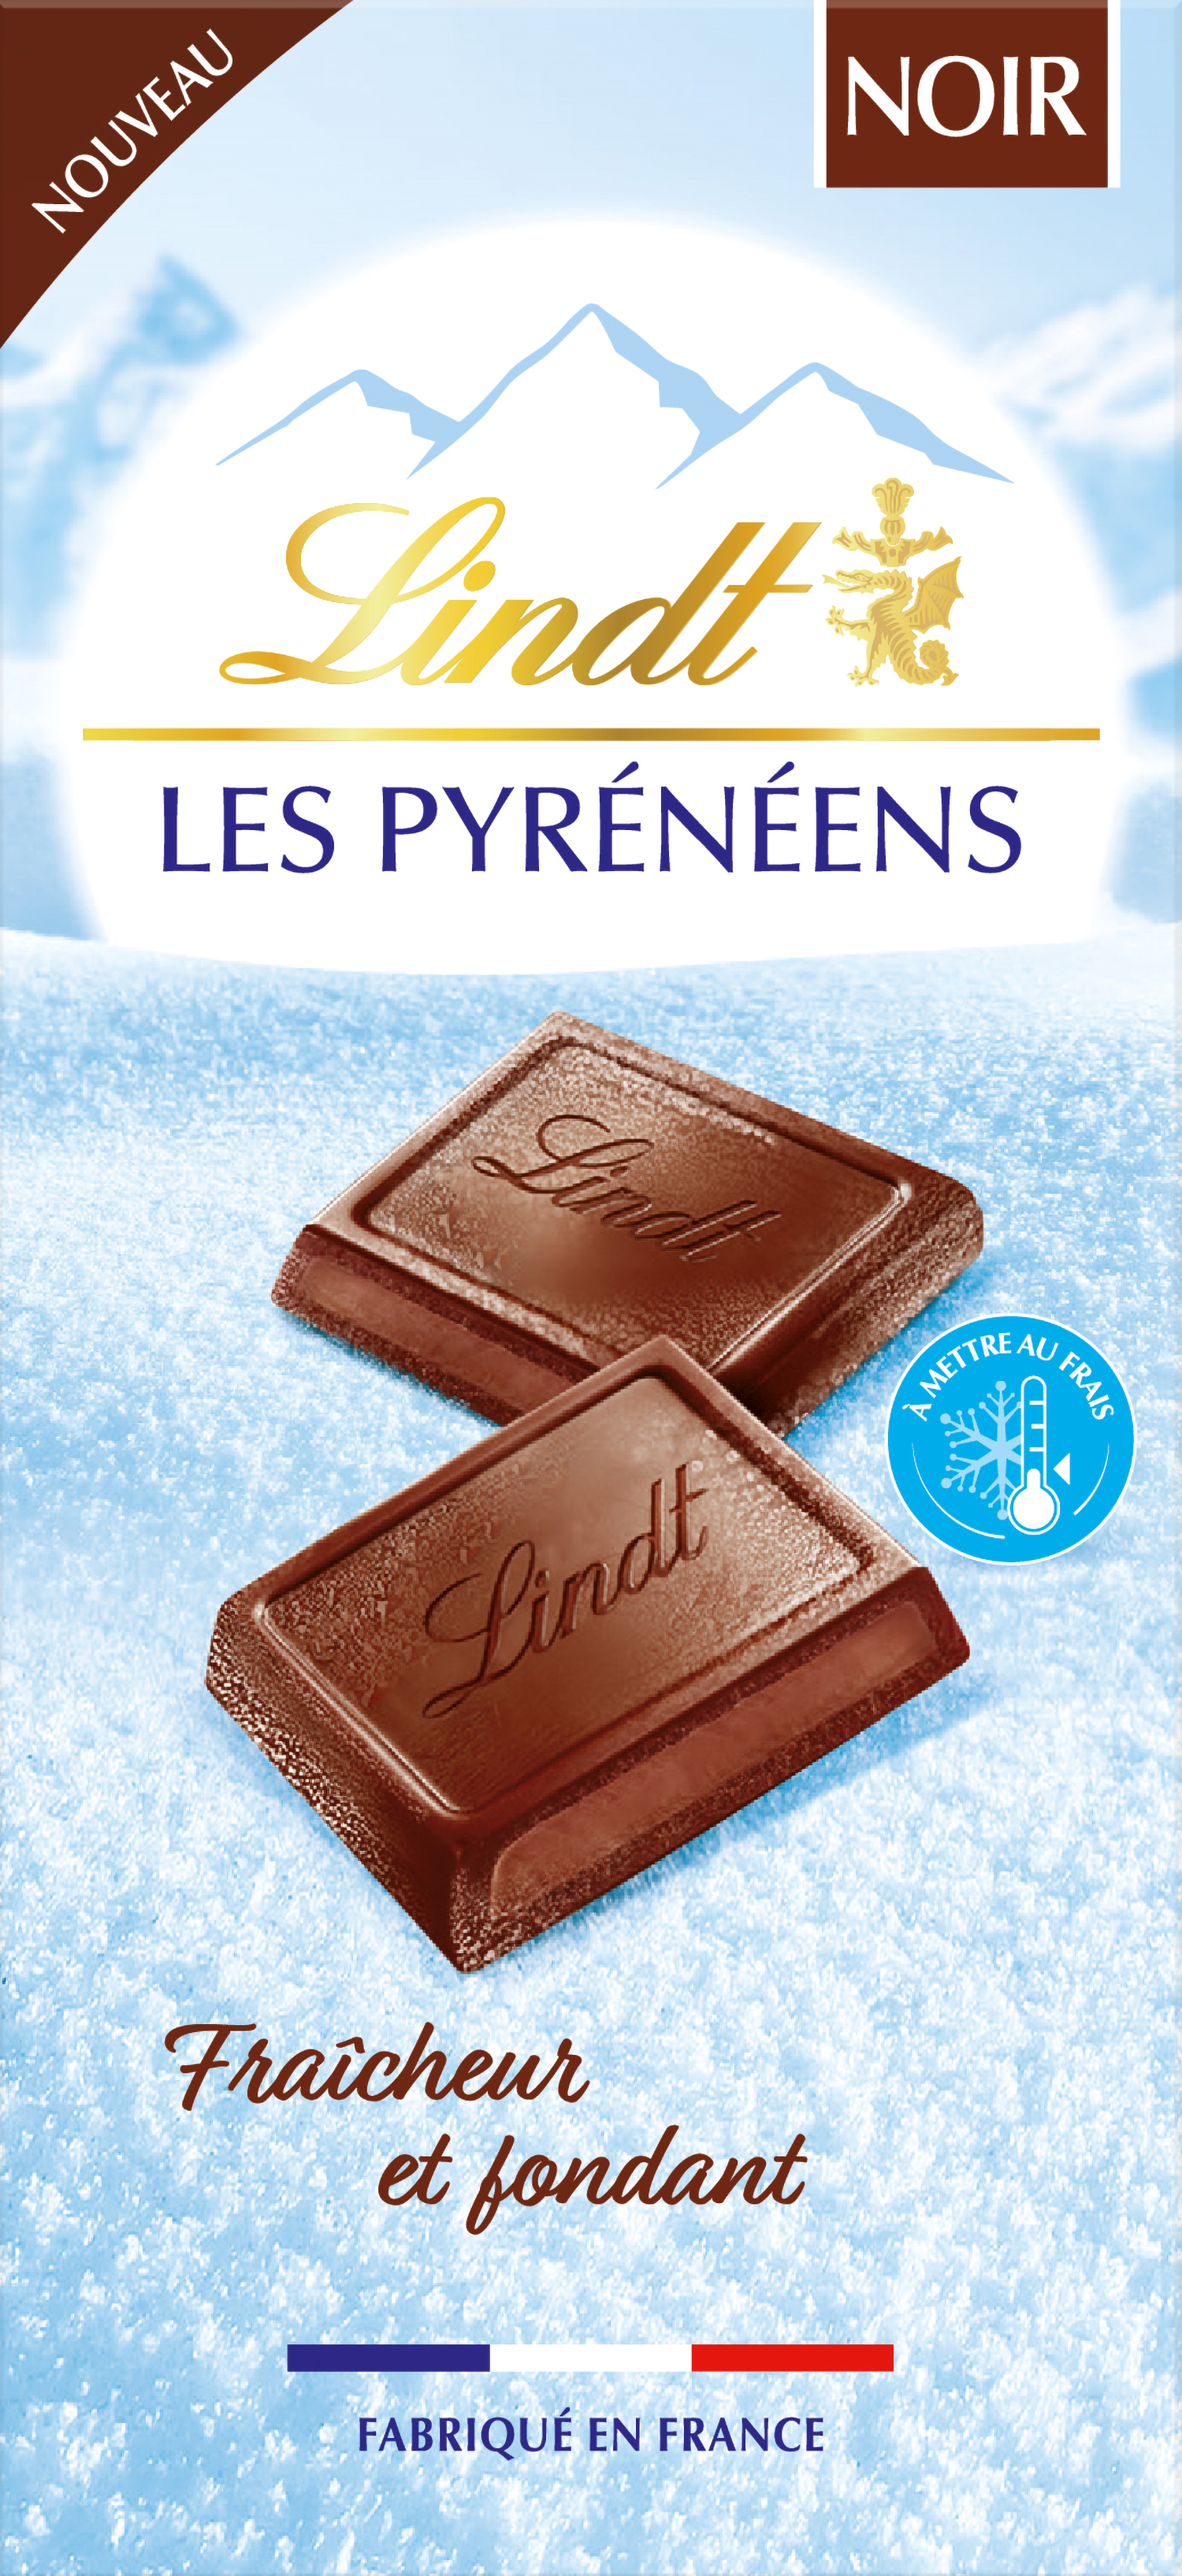 Lindt - Tablette 34% Noisettes LES GRANDES - Chocolat Noir, 150g